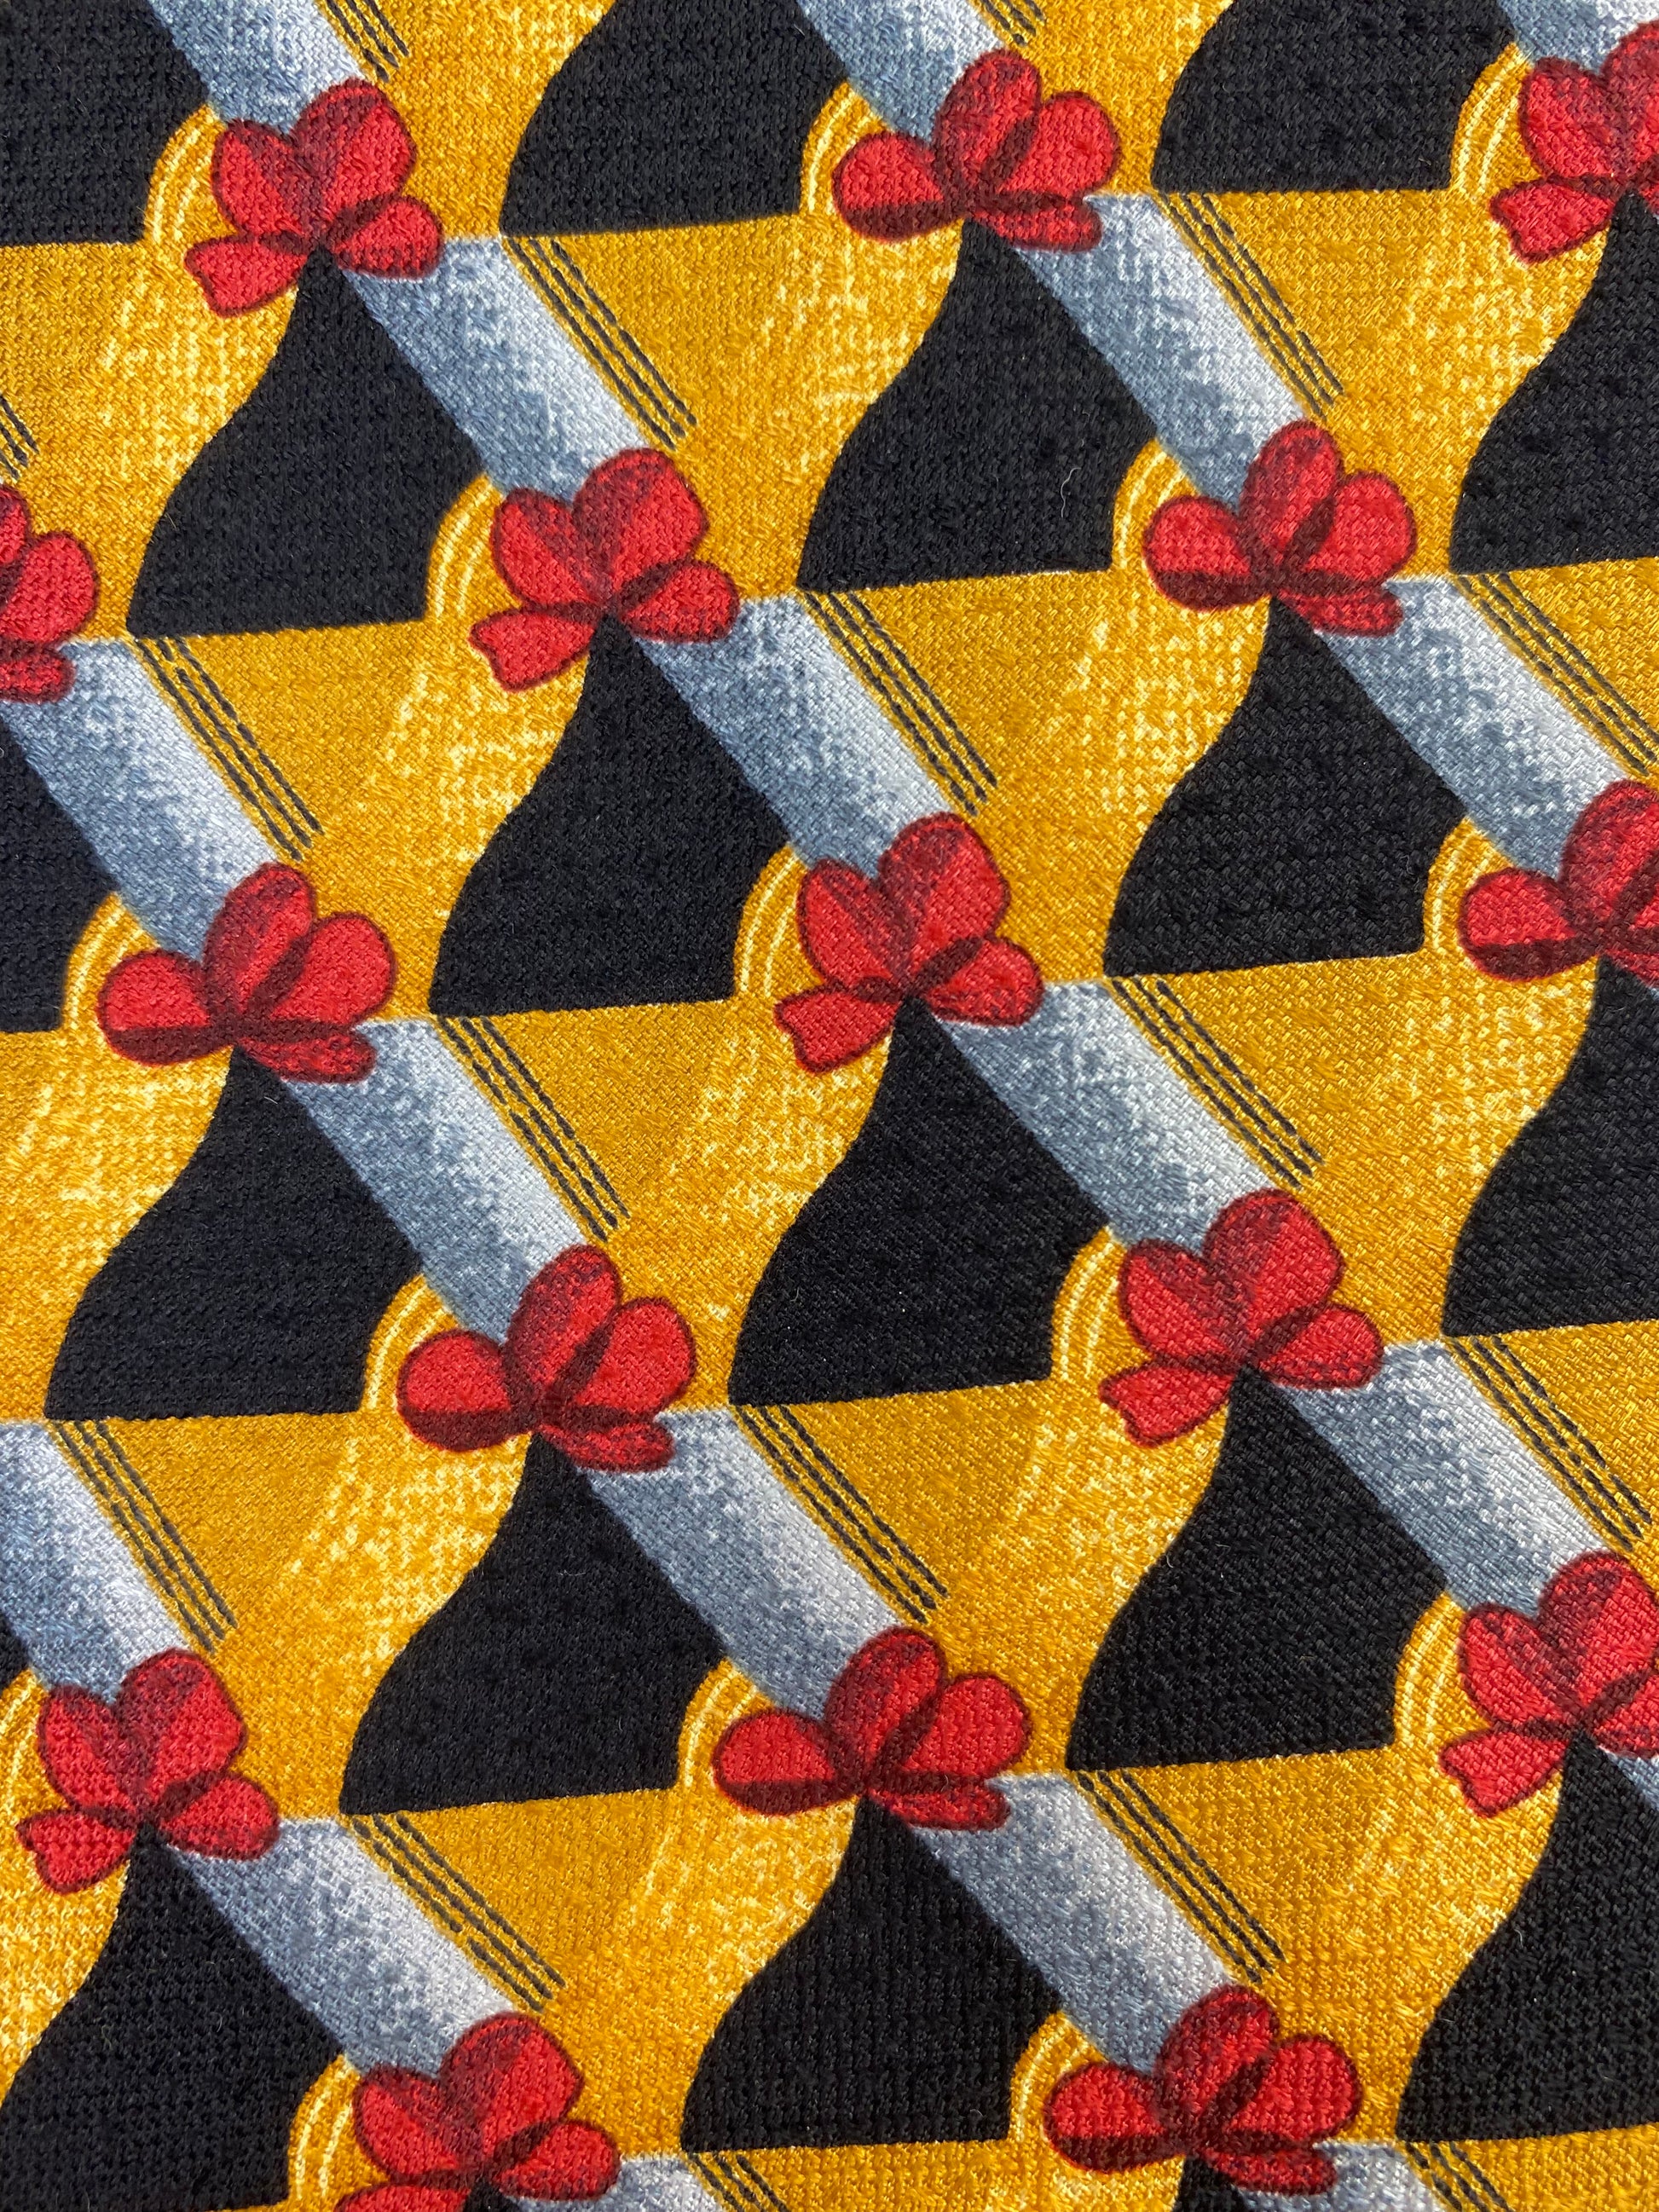 Close-up pattern detail of: 90s Deadstock Silk Necktie, Men's Vintage Gold Red Grey Lattice Pattern Tie, NOS